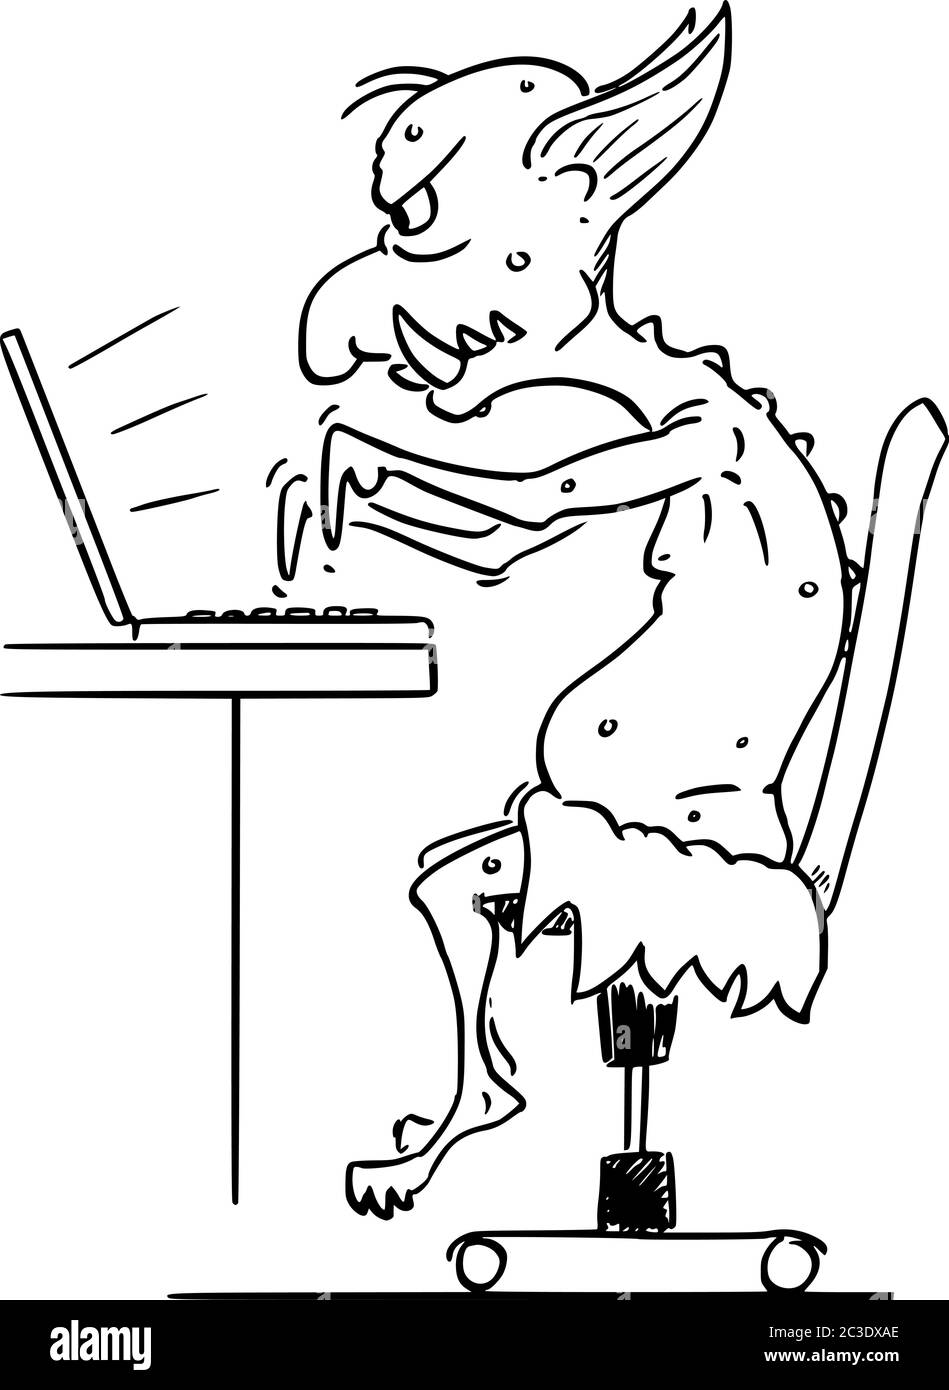 Disegno grafico vettoriale di cartoon illustrazione concettuale di Internet virtuale troll assaulting altri utenti online in guerre di fiamma digitando sul computer. Illustrazione Vettoriale